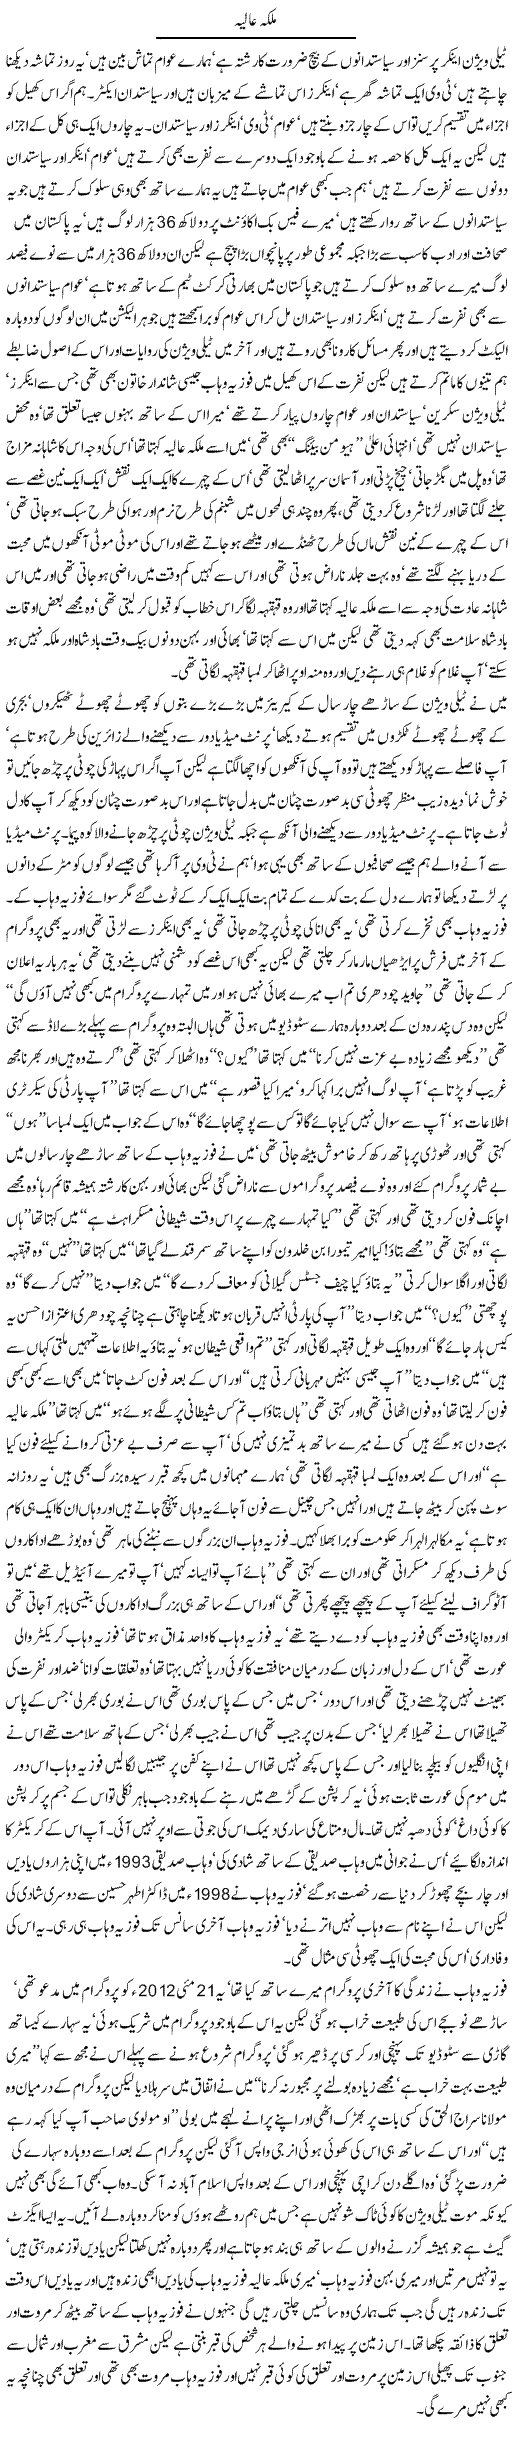 Fauzia Wahab Express Column Javed Chaudhry 16 July 2012